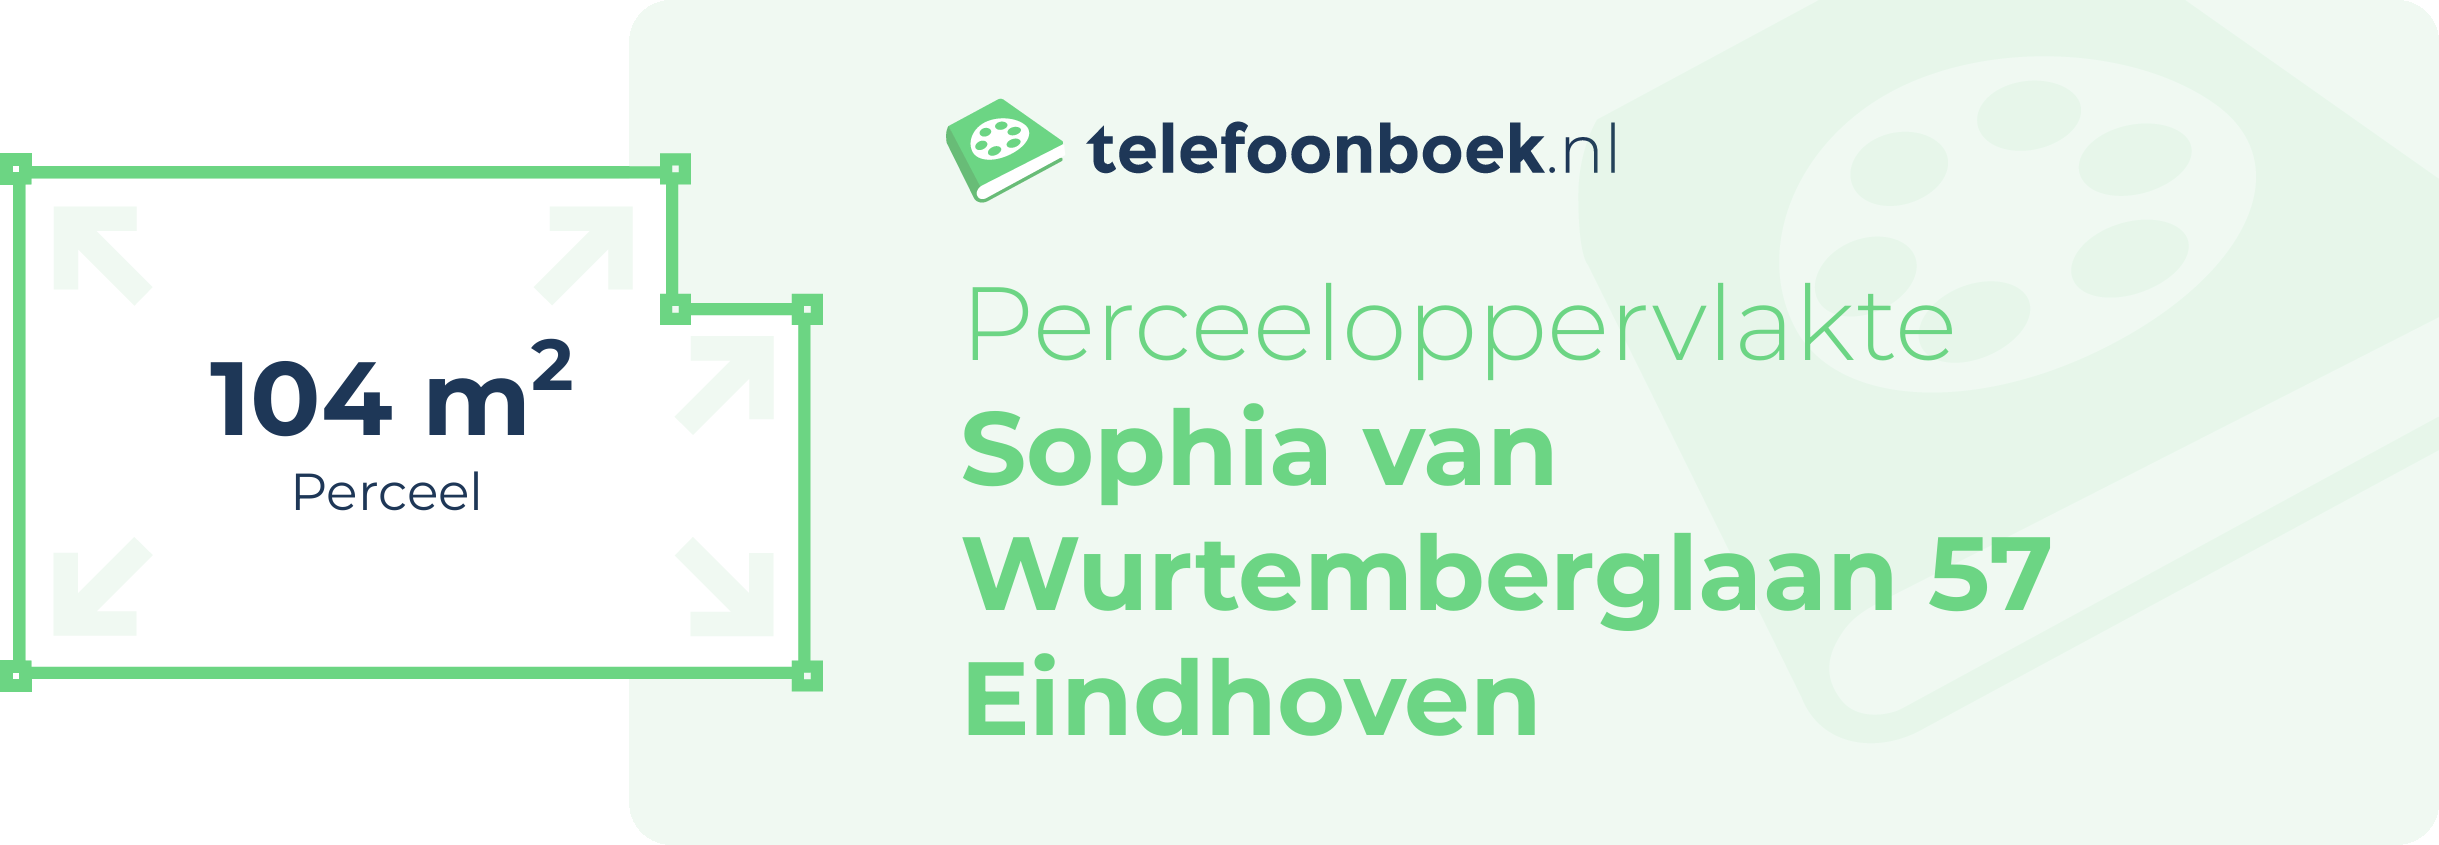 Perceeloppervlakte Sophia Van Wurtemberglaan 57 Eindhoven